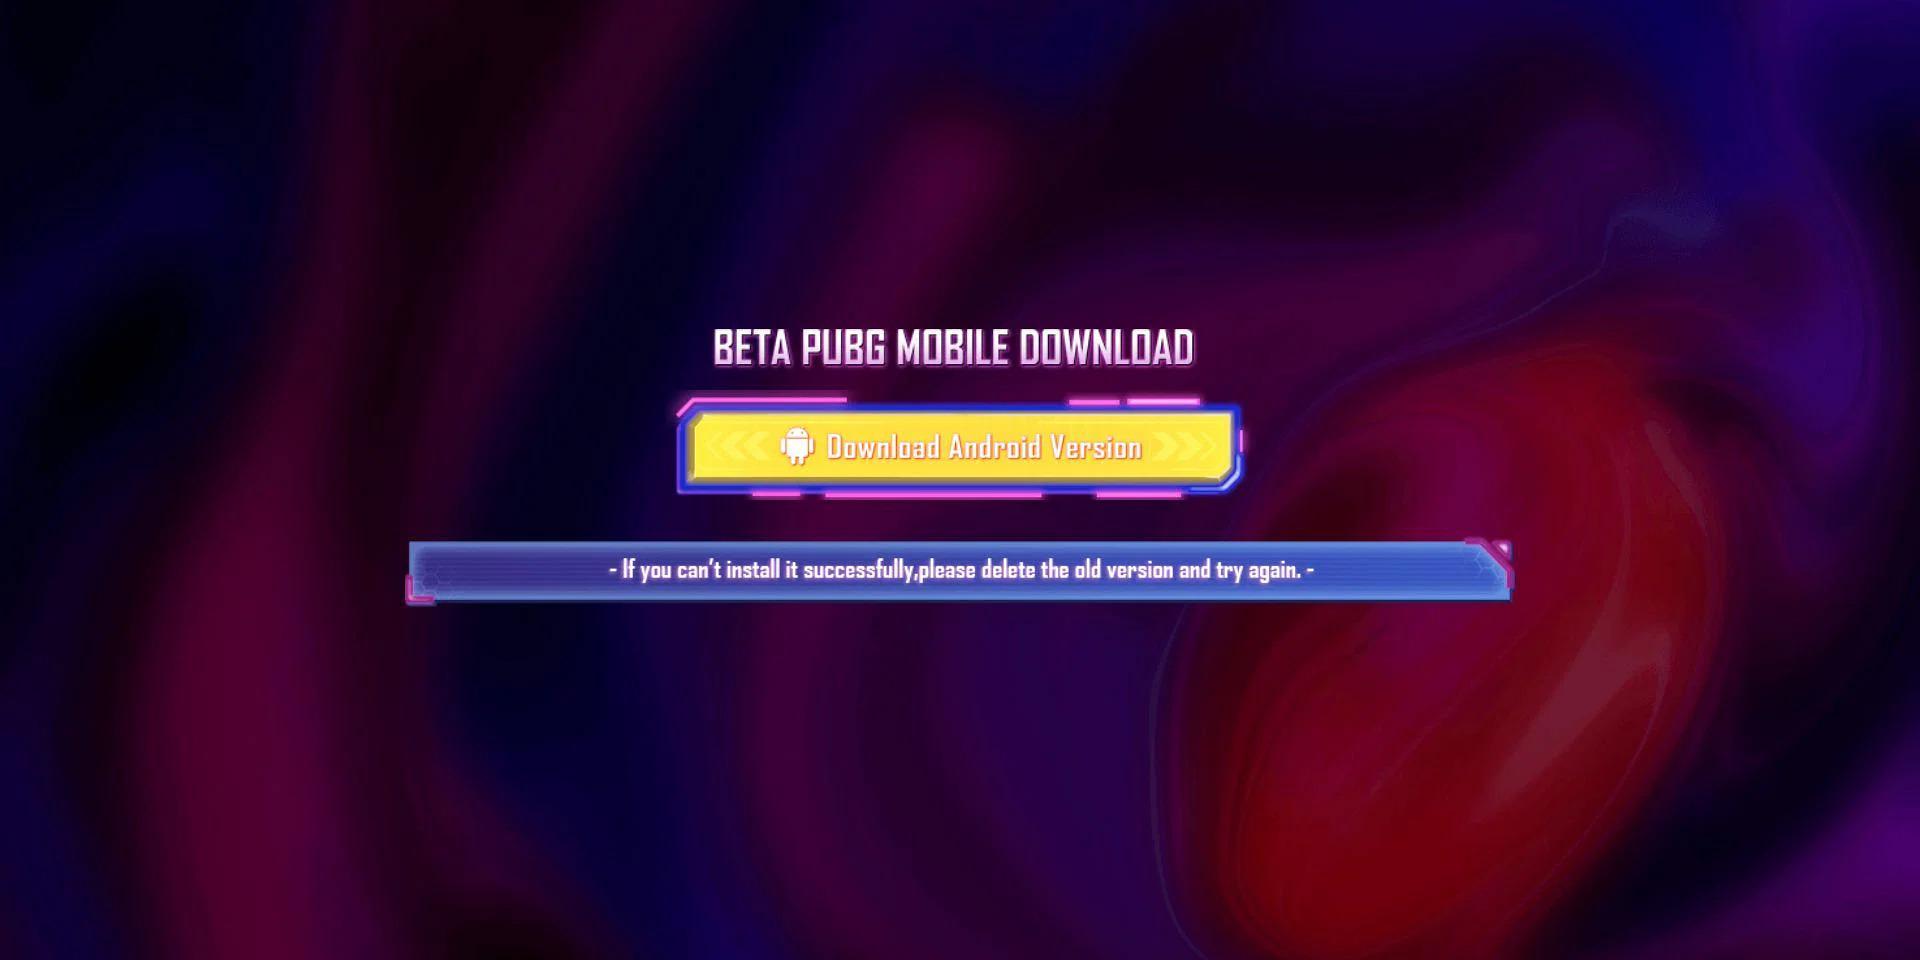 PUBG Mobile 2.3 beta